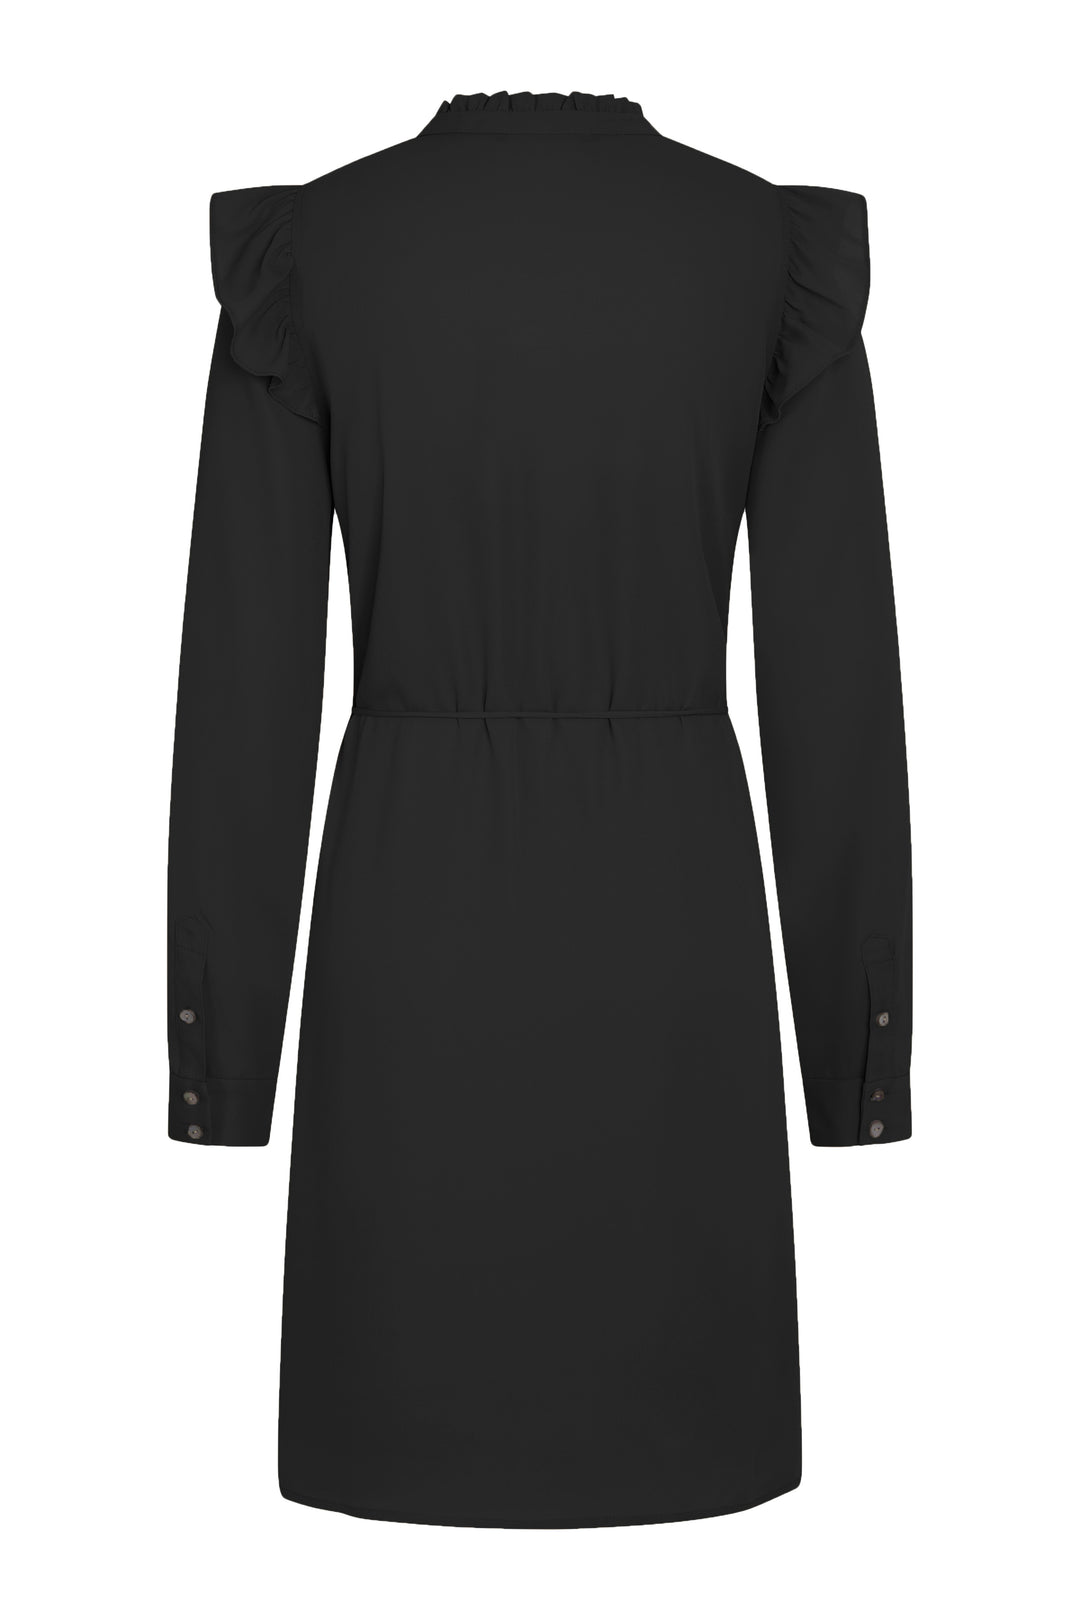 Bruuns Bazaar Women CamillaBBNichola dress Dress Black